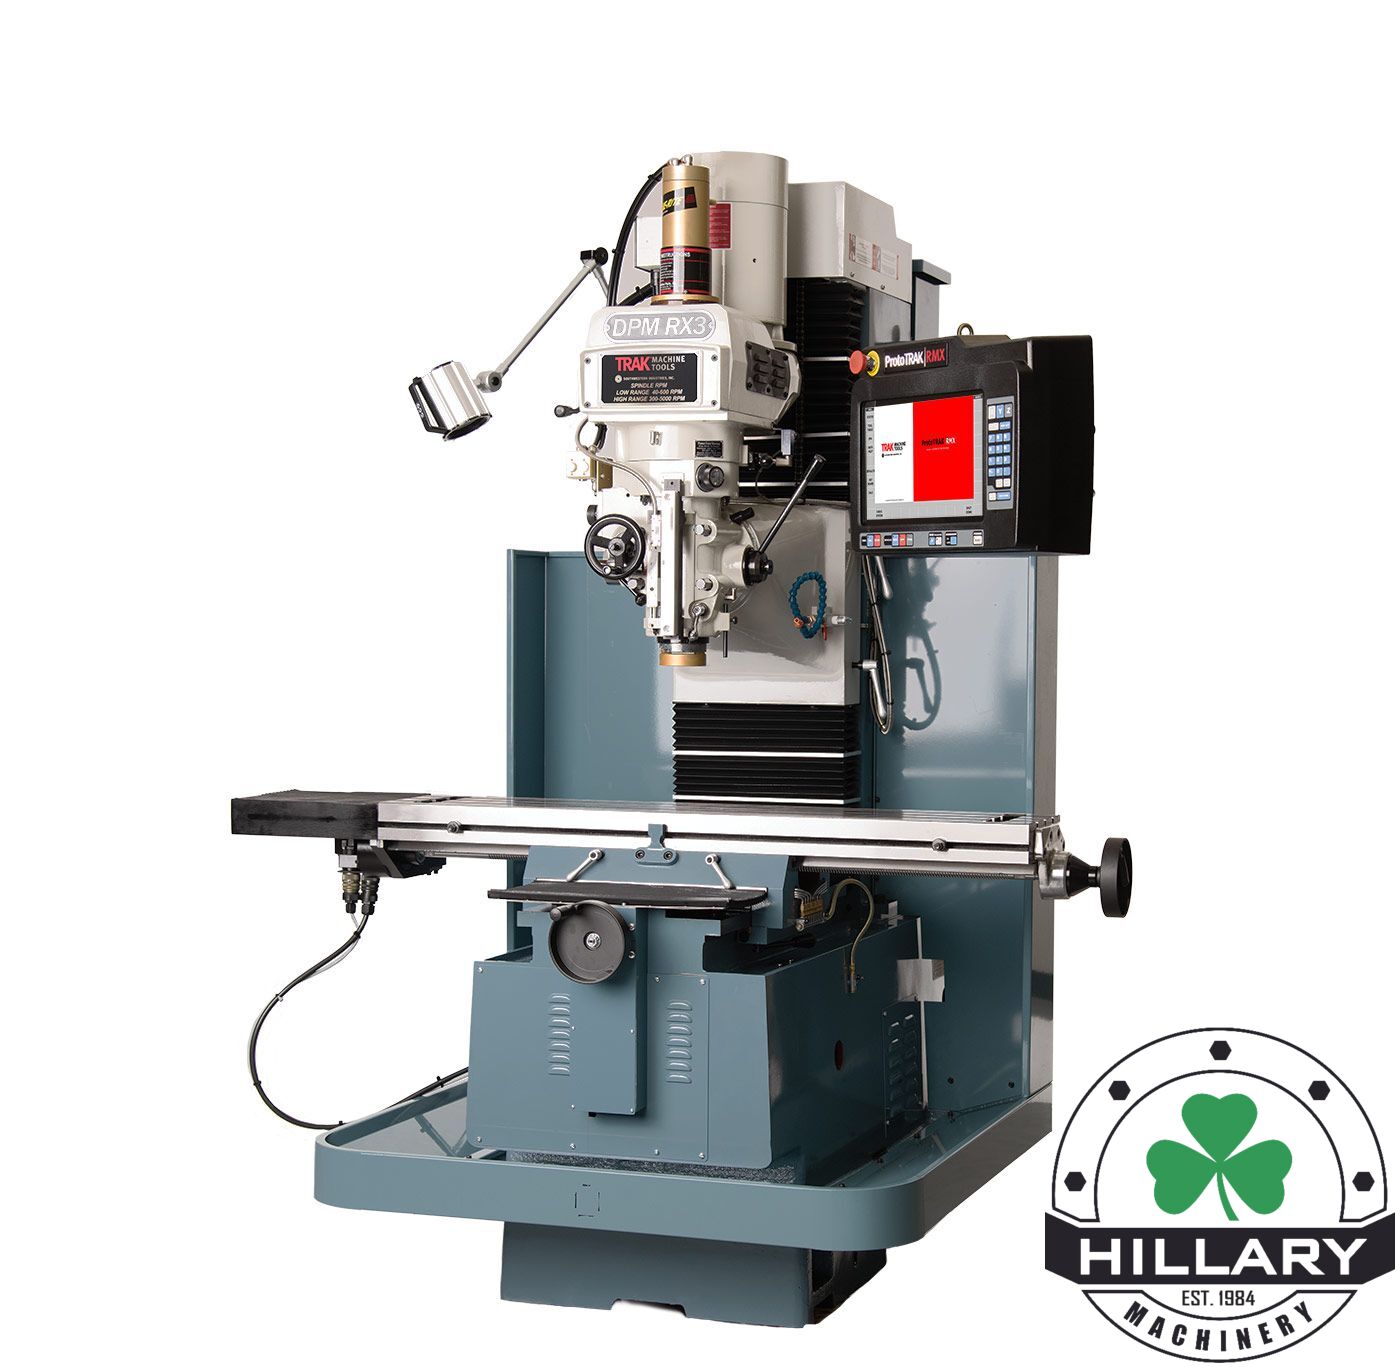 TRAK MACHINE TOOLS TRAK DPM RX3 Tool Room Mills | Hillary Machinery